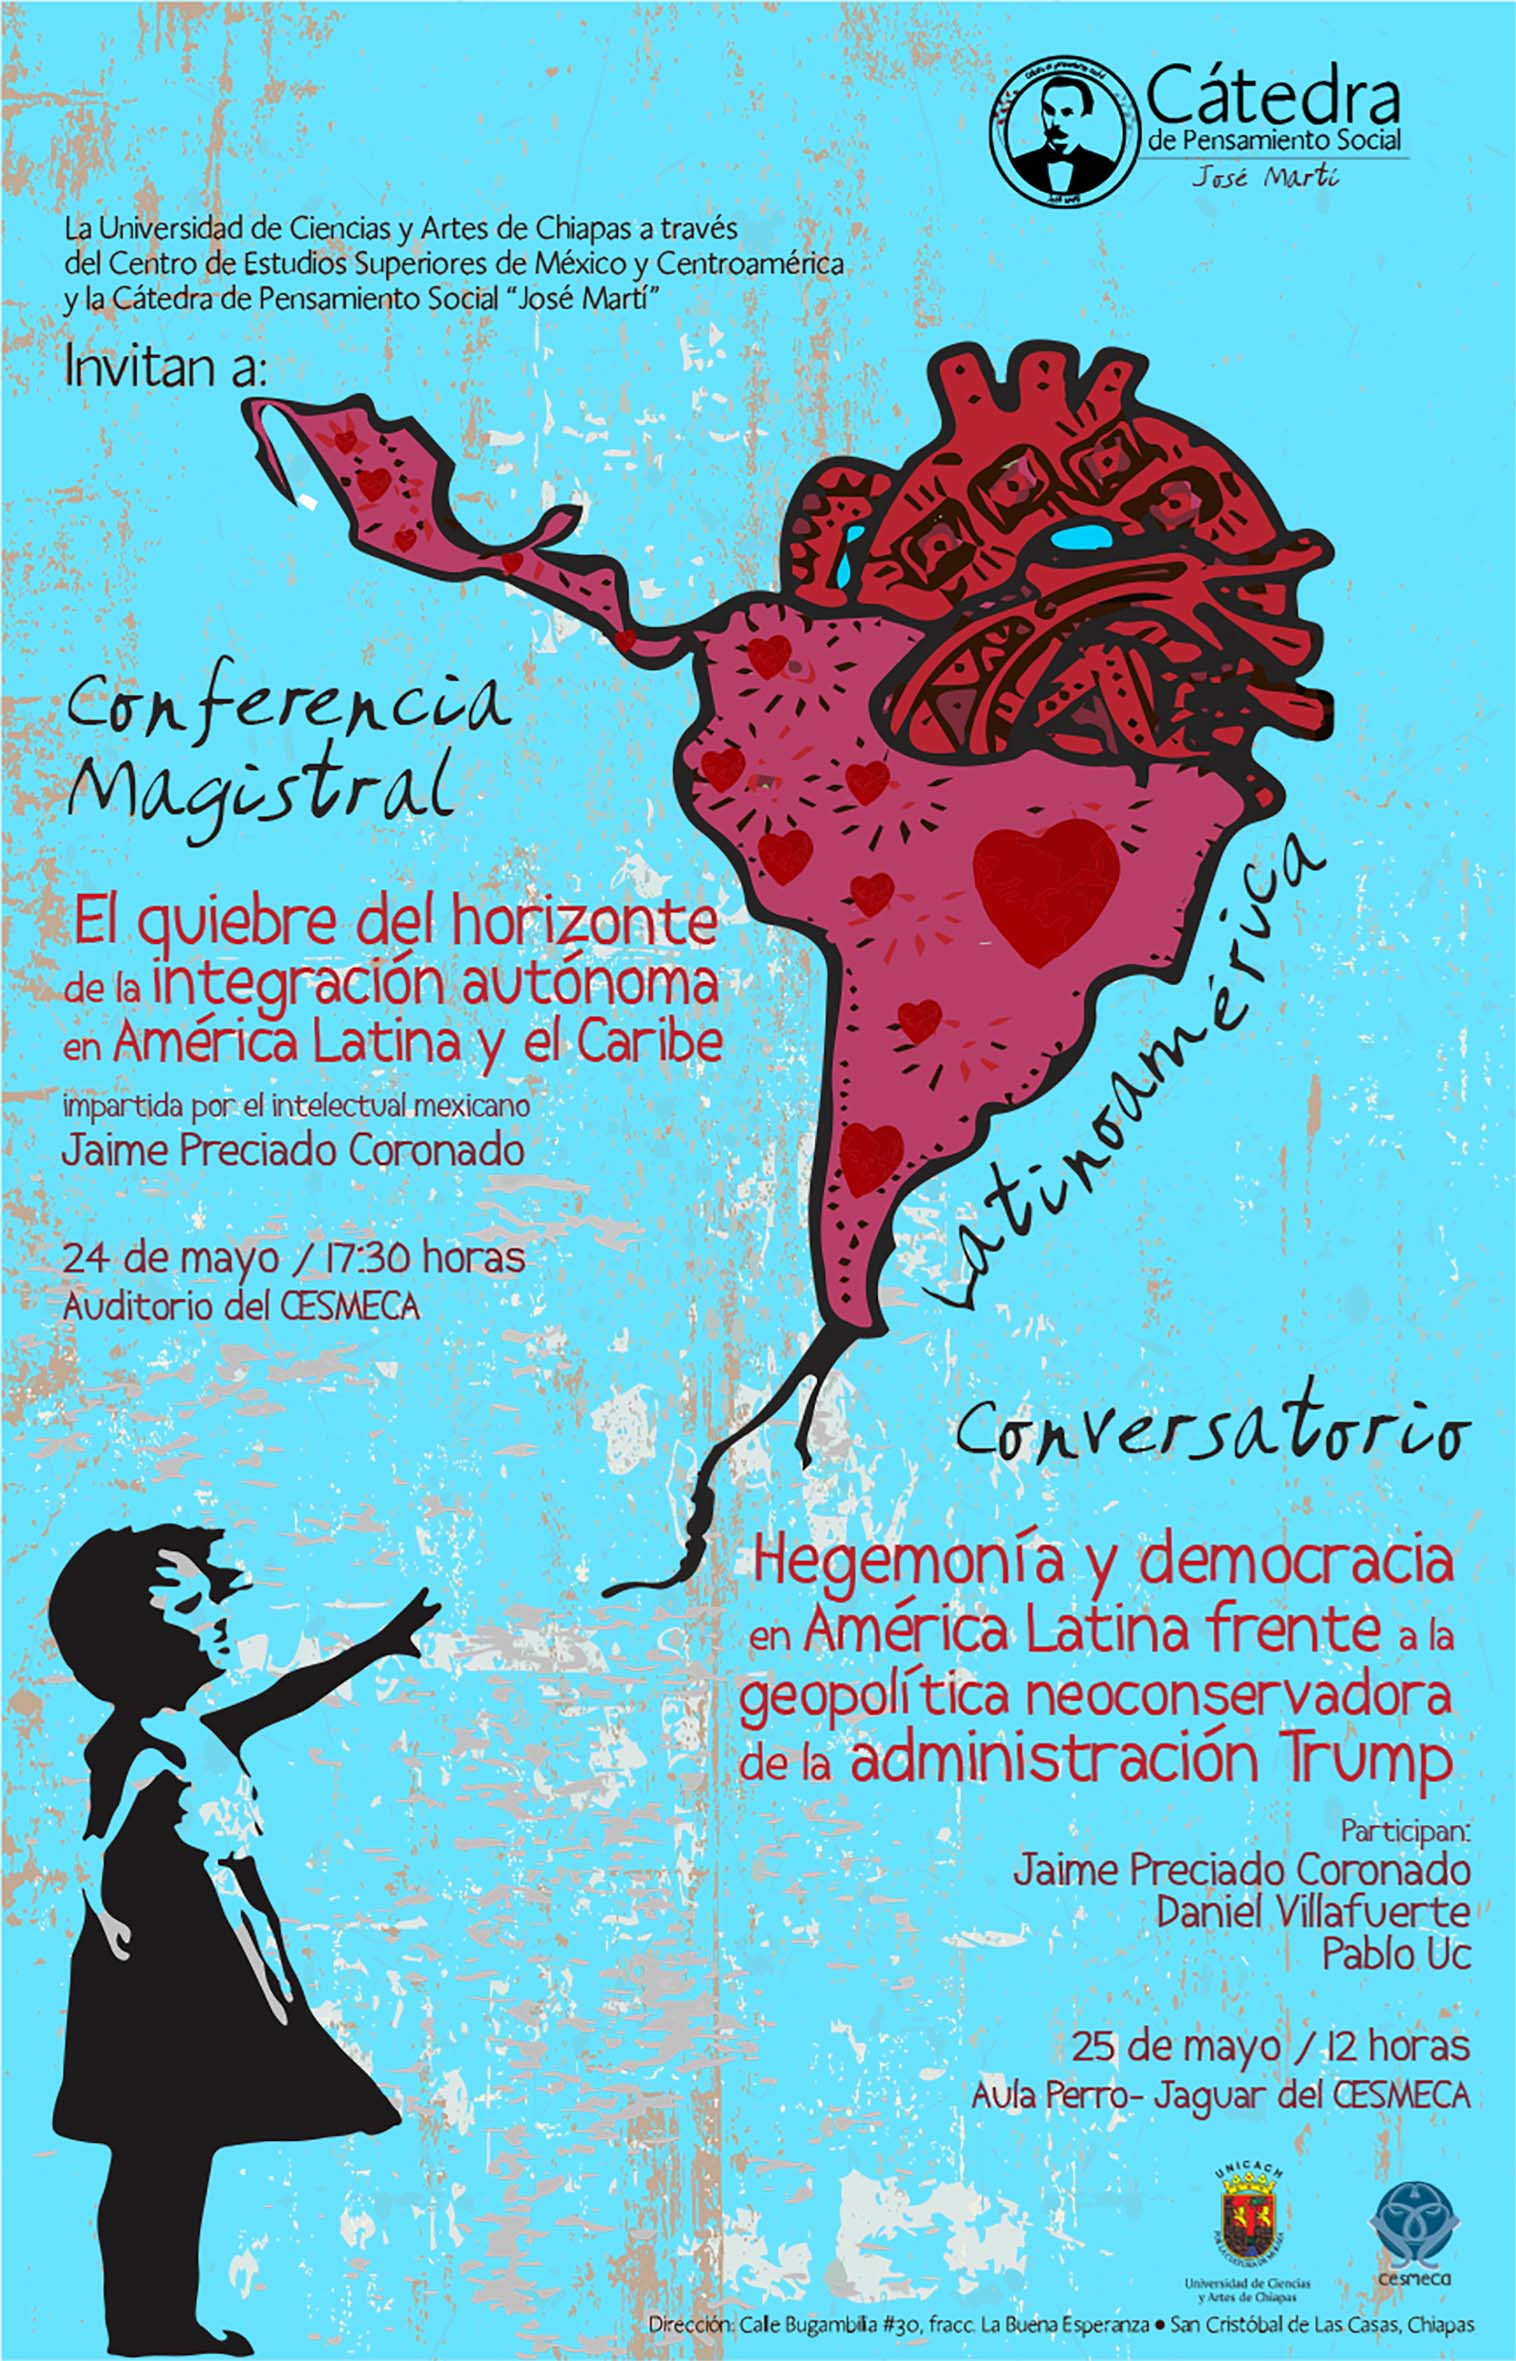 El quiebre del horizonte de la integración autónoma en América Latina y el Caribe